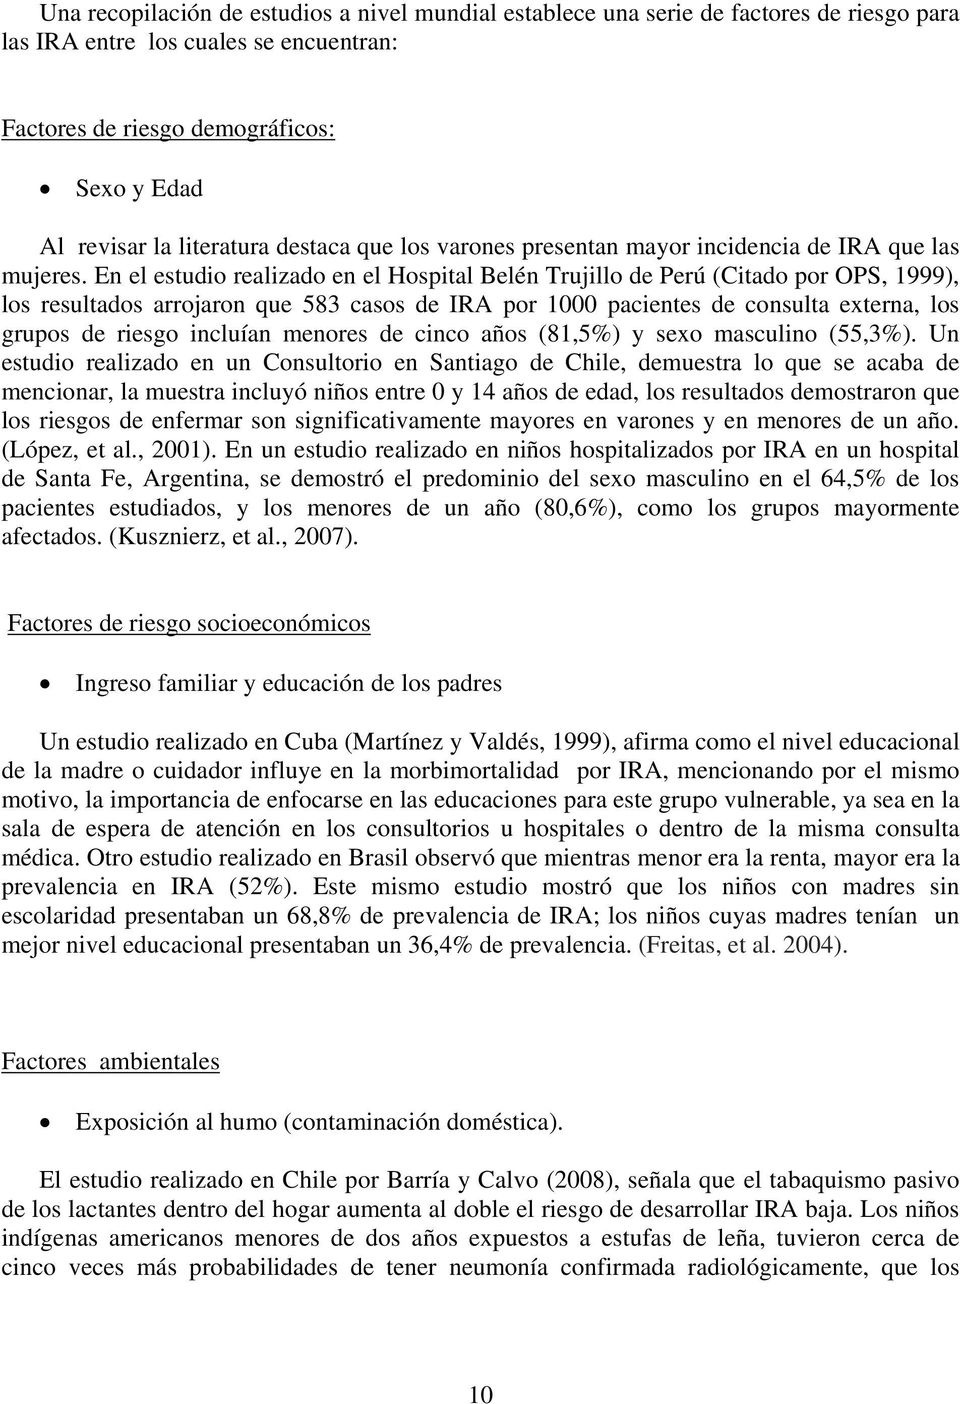 En el estudio realizado en el Hospital Belén Trujillo de Perú (Citado por OPS, 1999), los resultados arrojaron que 583 casos de IRA por 1000 pacientes de consulta externa, los grupos de riesgo